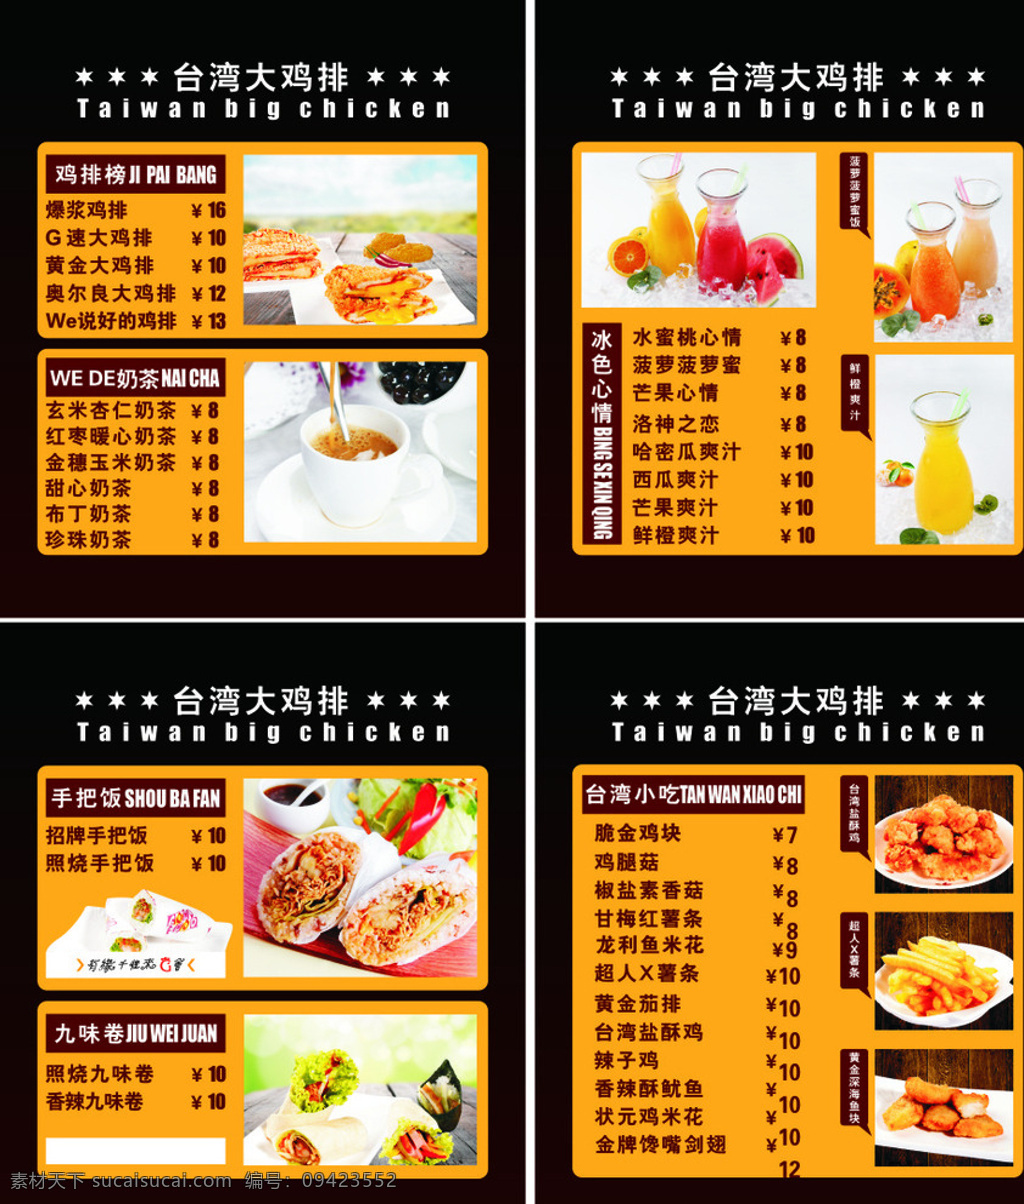 台湾鸡排菜单 台湾 鸡排 菜单 台湾鸡排 菜谱 菜单价目表 展板 海报 菜单菜谱 黑色